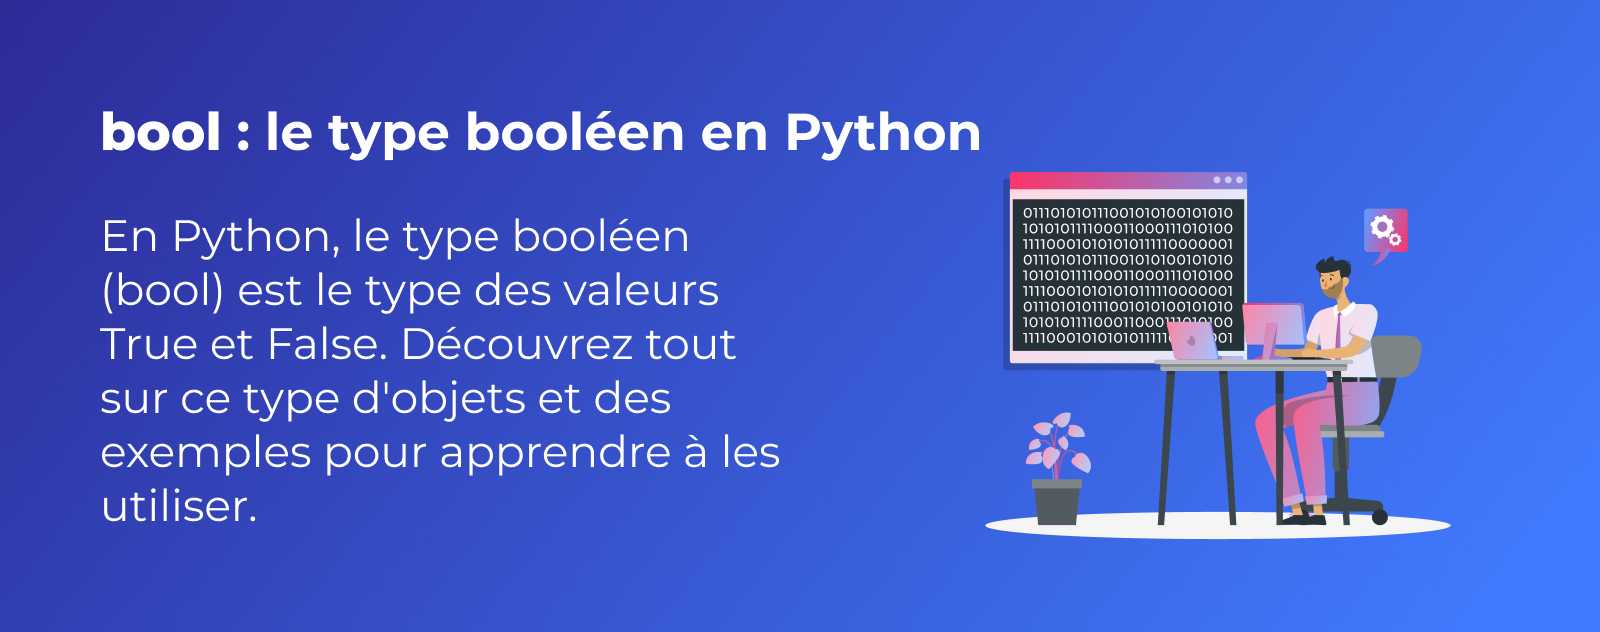 Le type booléen "bool" en Python